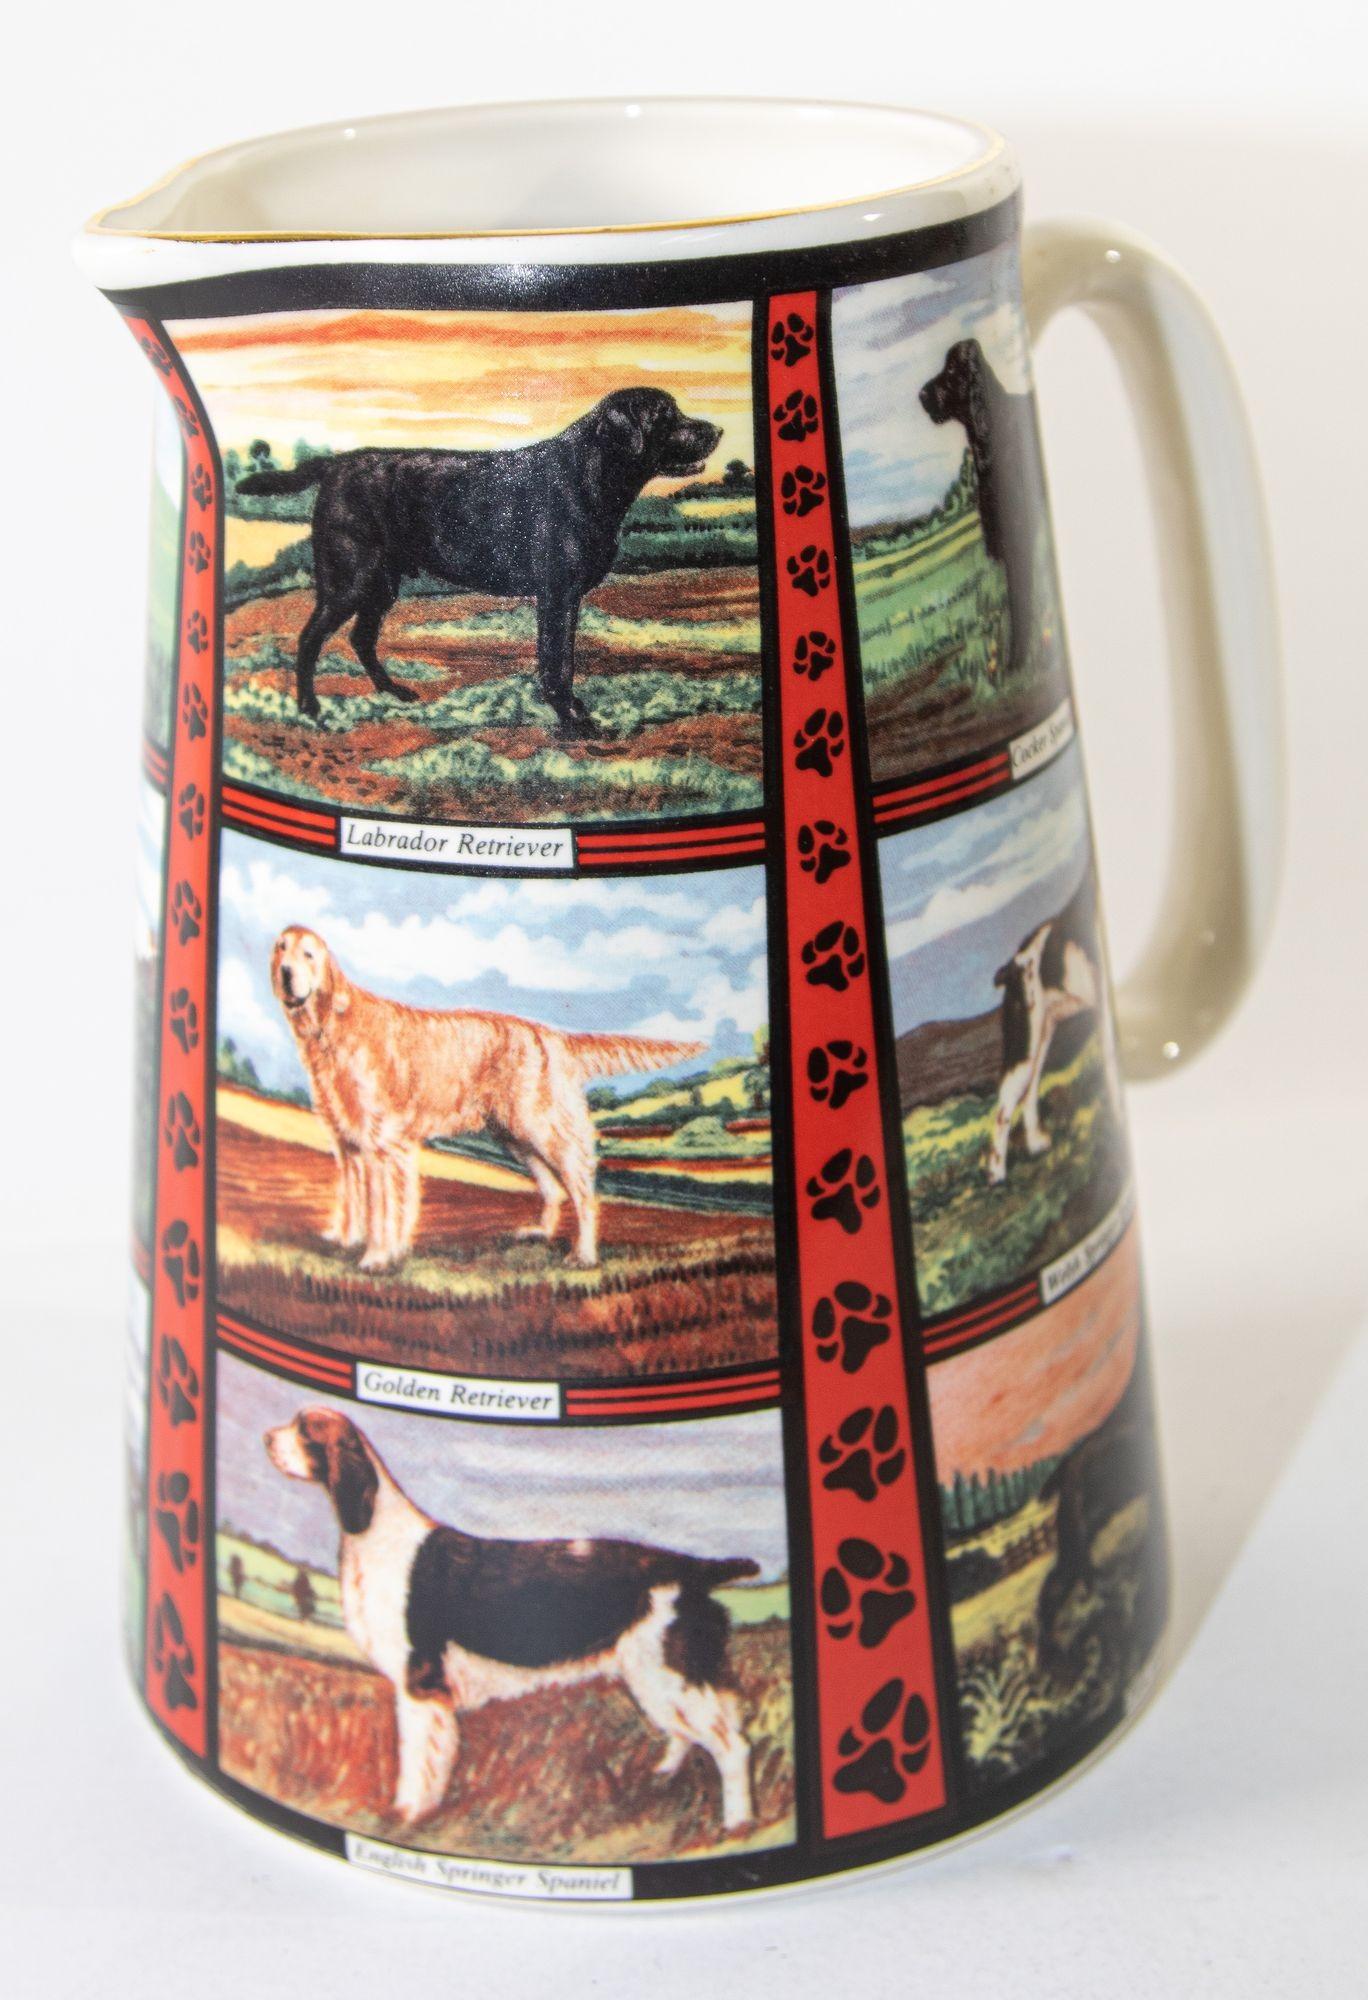 Pichet vintage en céramique des années 1970, Derbyshire England avec motif de races de chiens.
Grand pichet décoratif en pierre de fer anglaise imprimée par transfert
Jug fantaisiste, lumineux et magnifique poterie vintage du Derbyshire des années